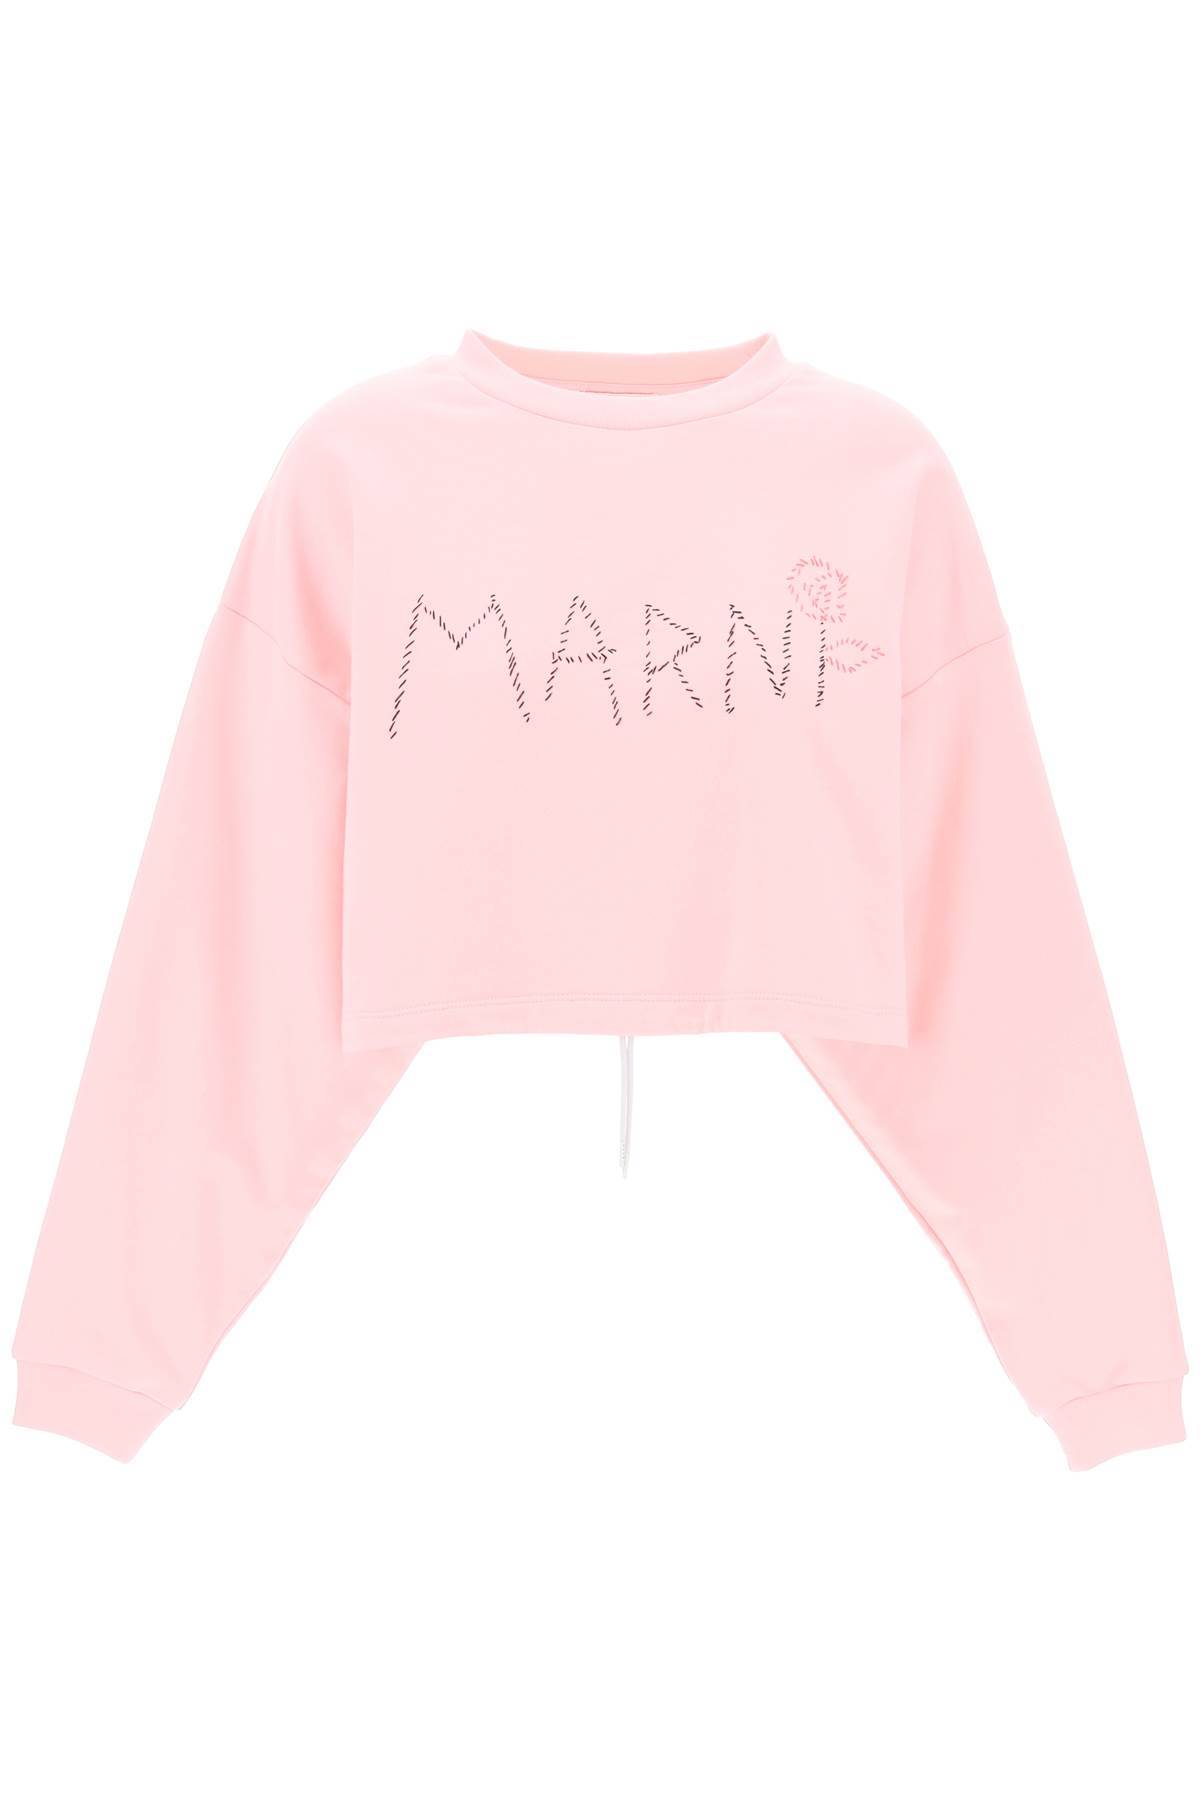 Marni MARNI "organic cotton sweatshirt with hand-embroid